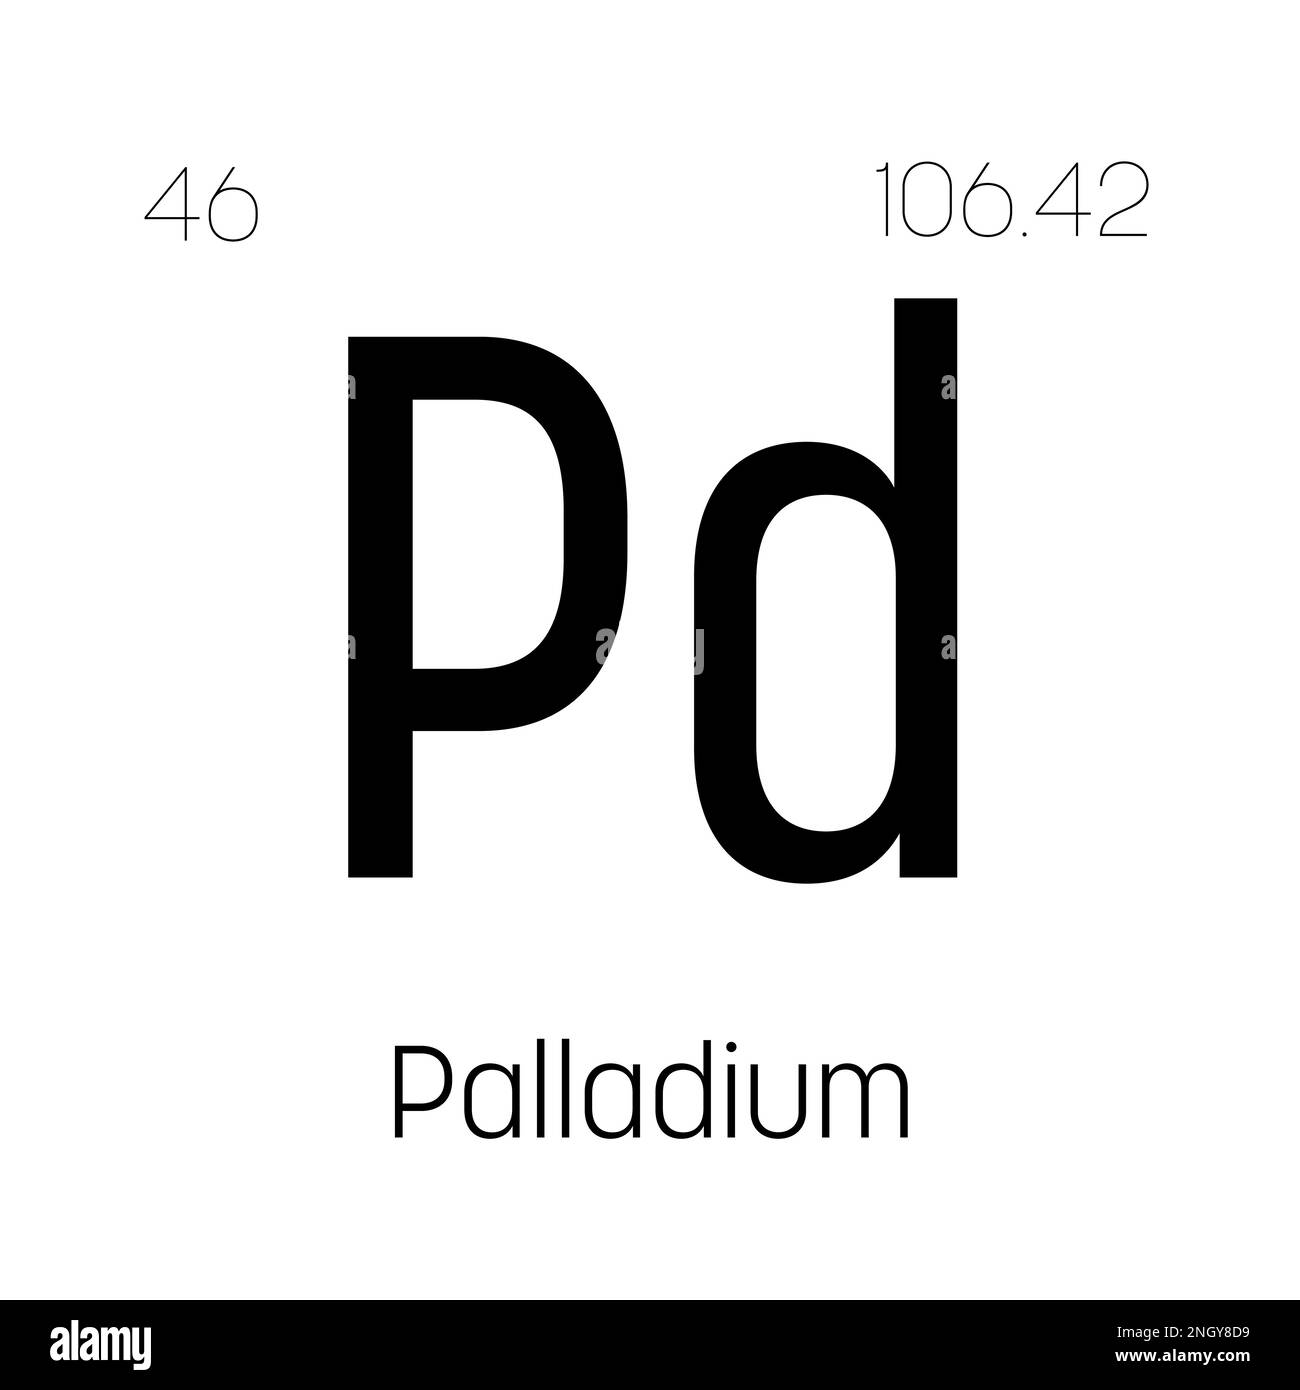 Uses Of Palladium